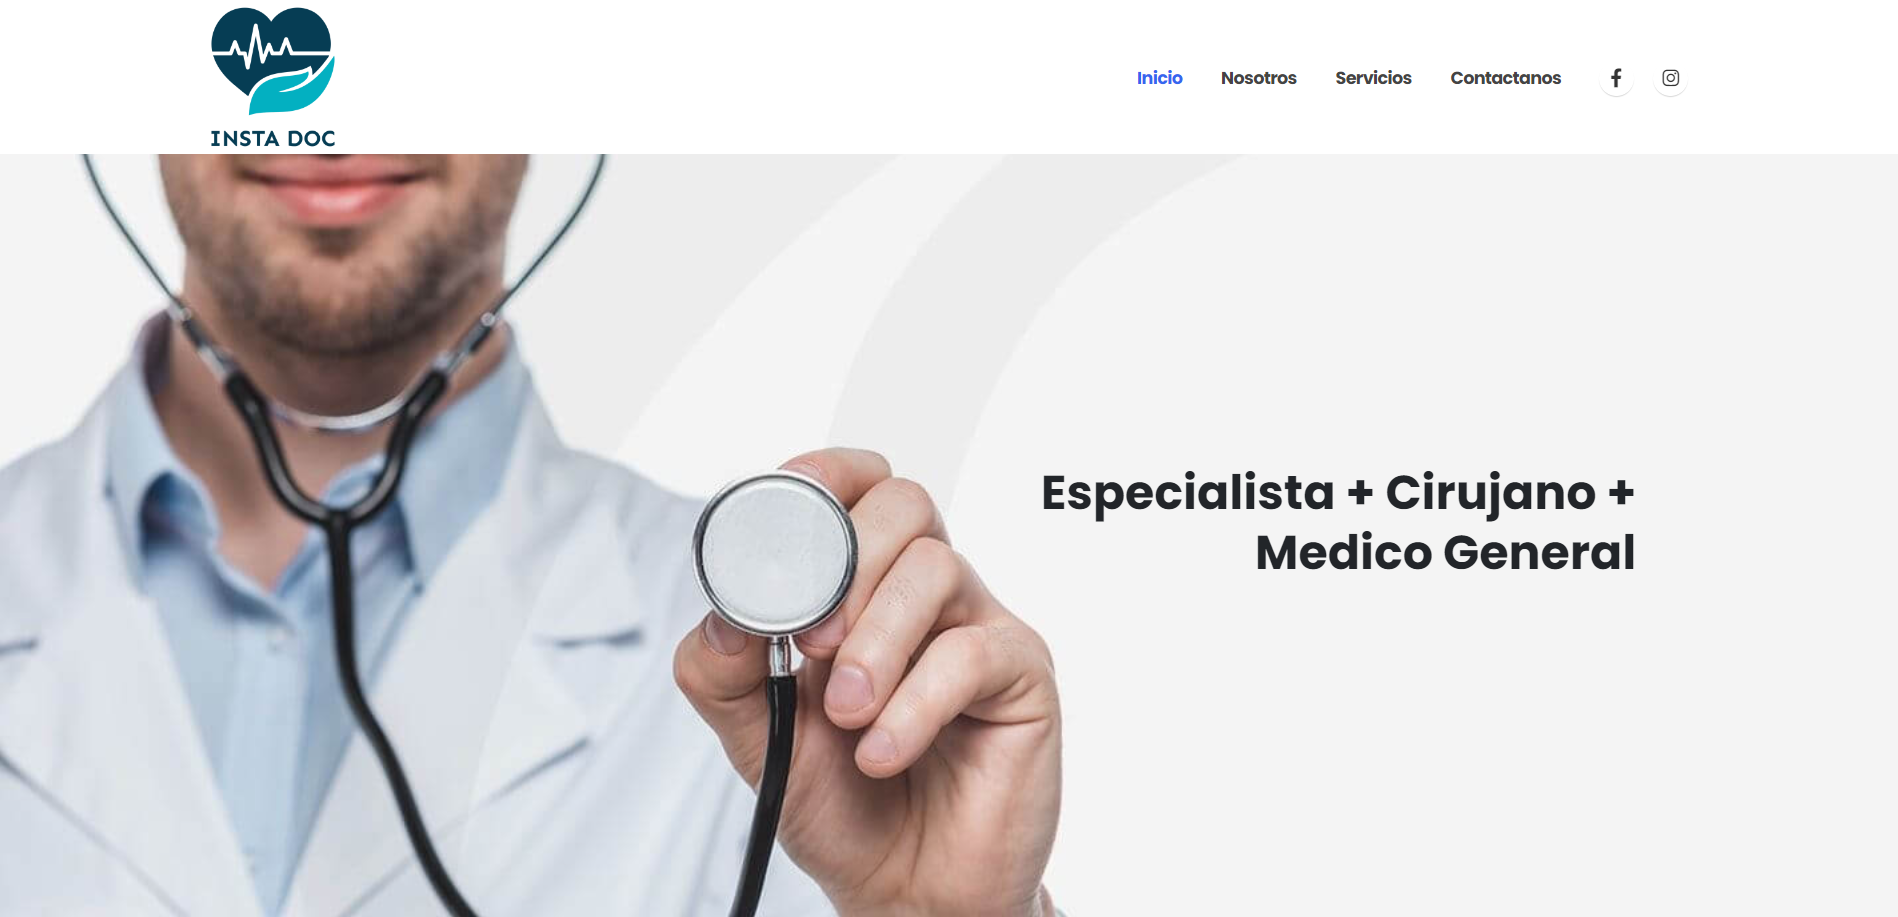 Mini página web para empresas enfocadas en el área de la salud (médica) - ejemplo de página parte 1